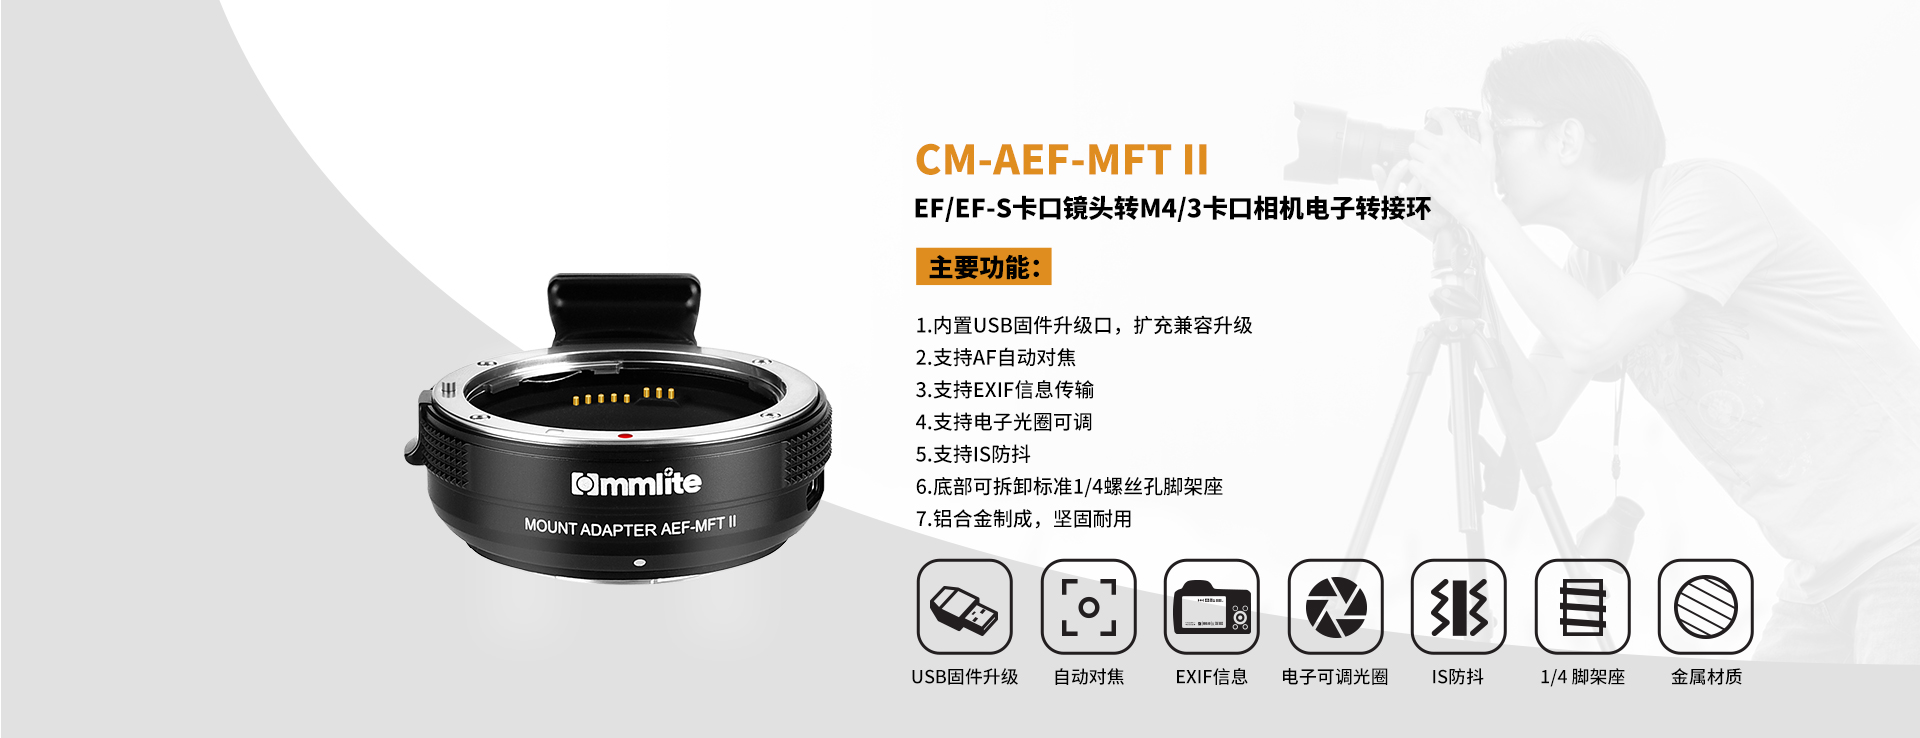 CM-AEF-MFT II